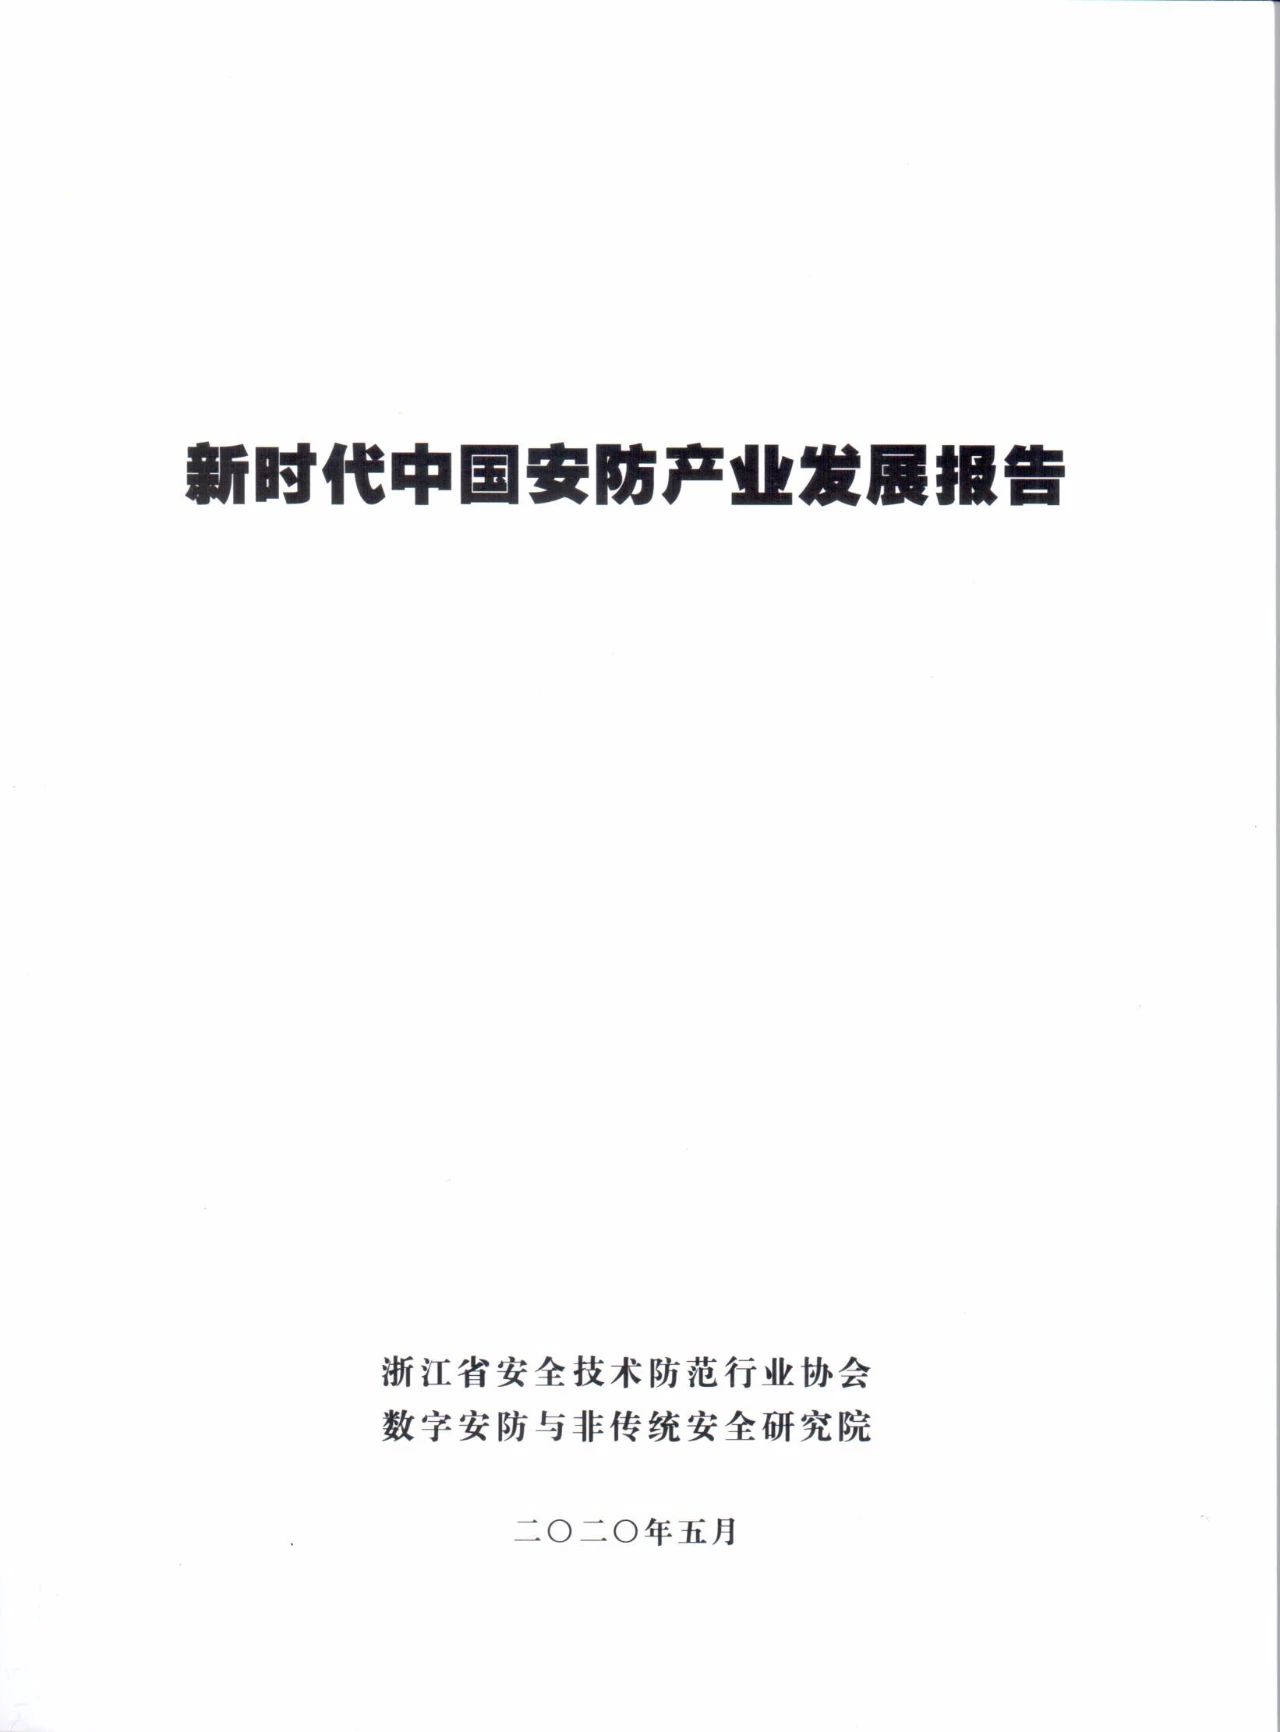 浙江安防协会发布《新时代中国安防产业发展报告》